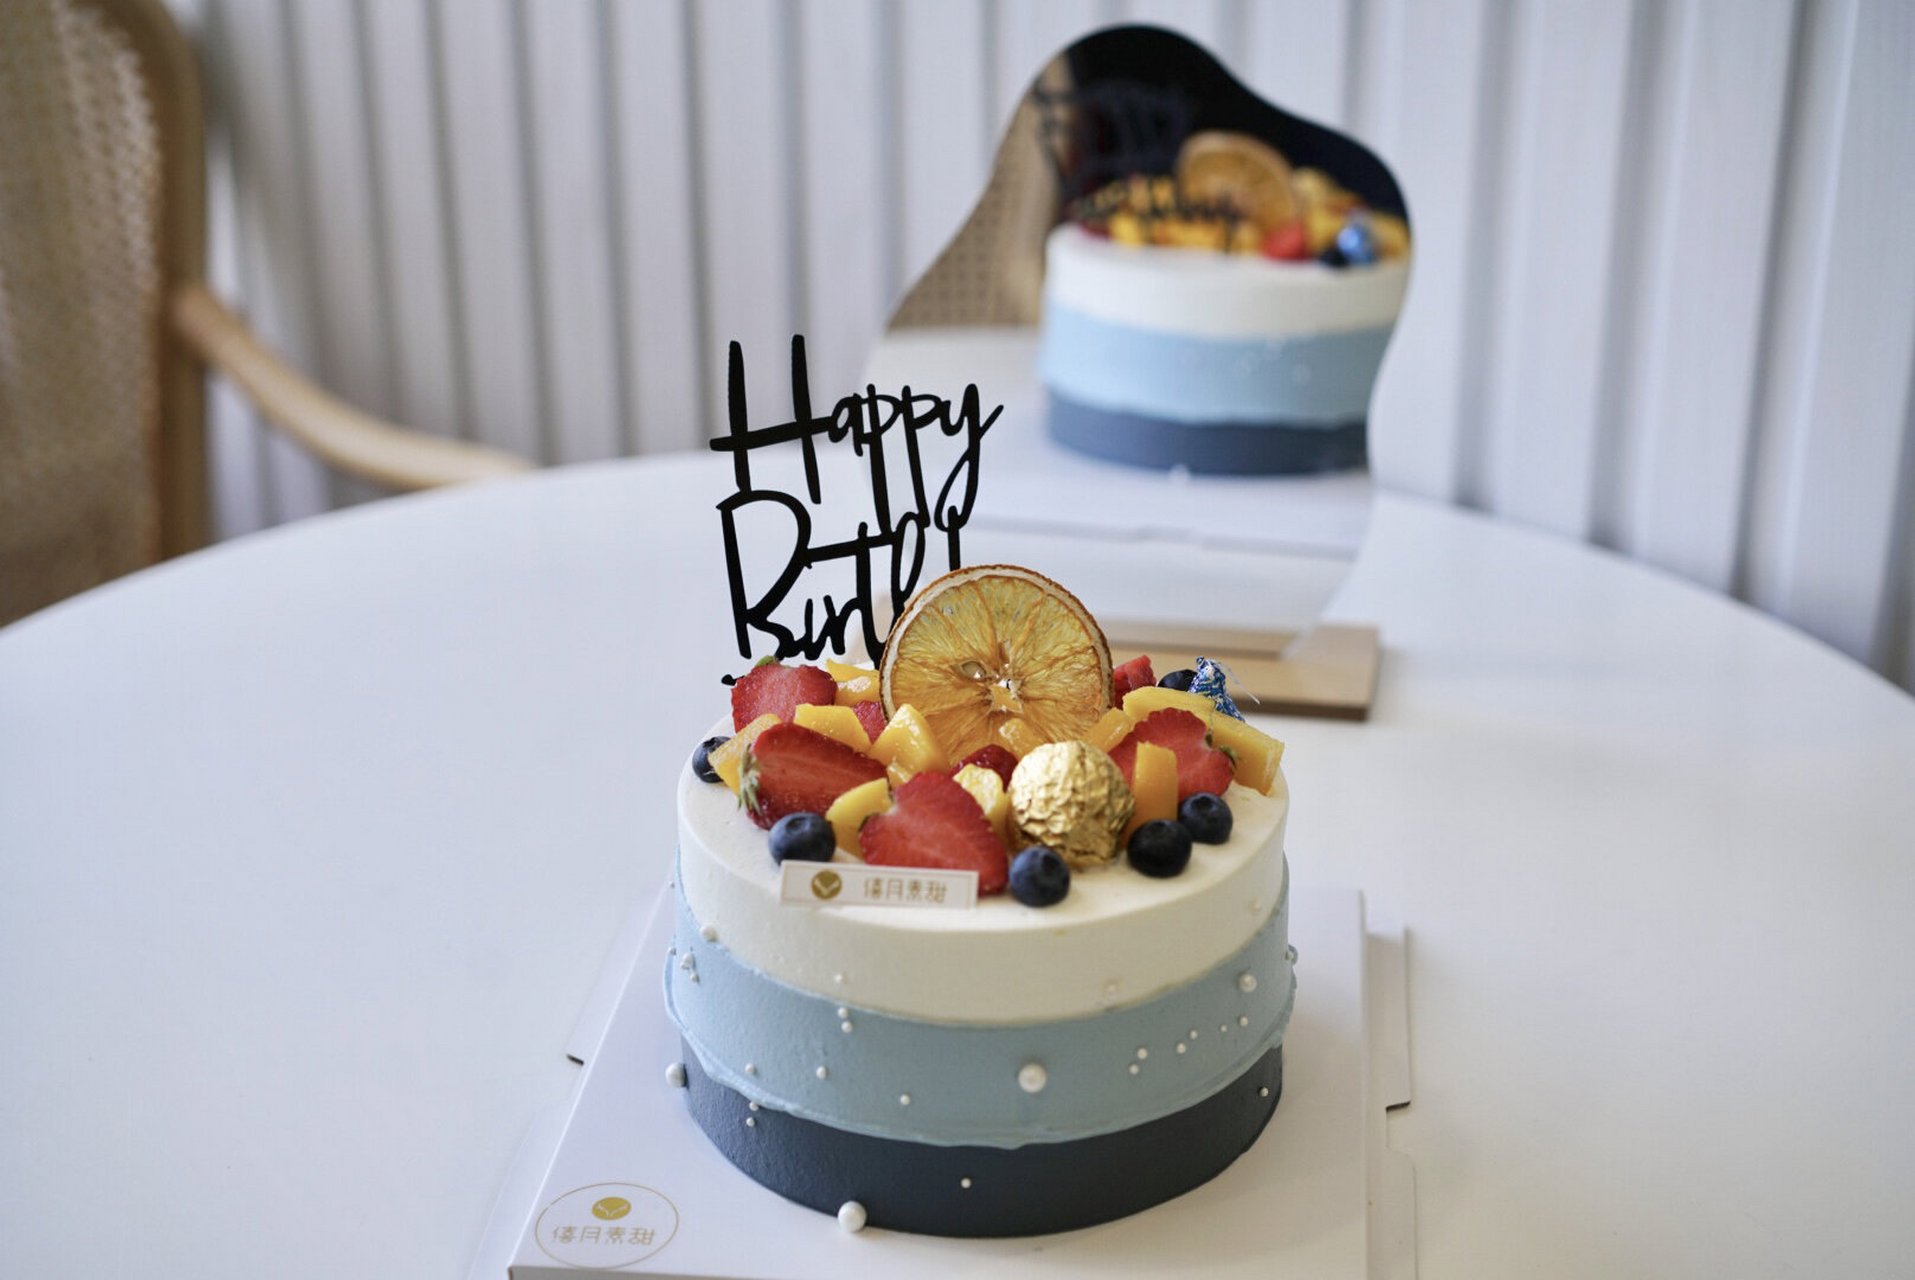 男士简约水果款生日蛋糕 适合304050岁左右的男士生日蛋糕